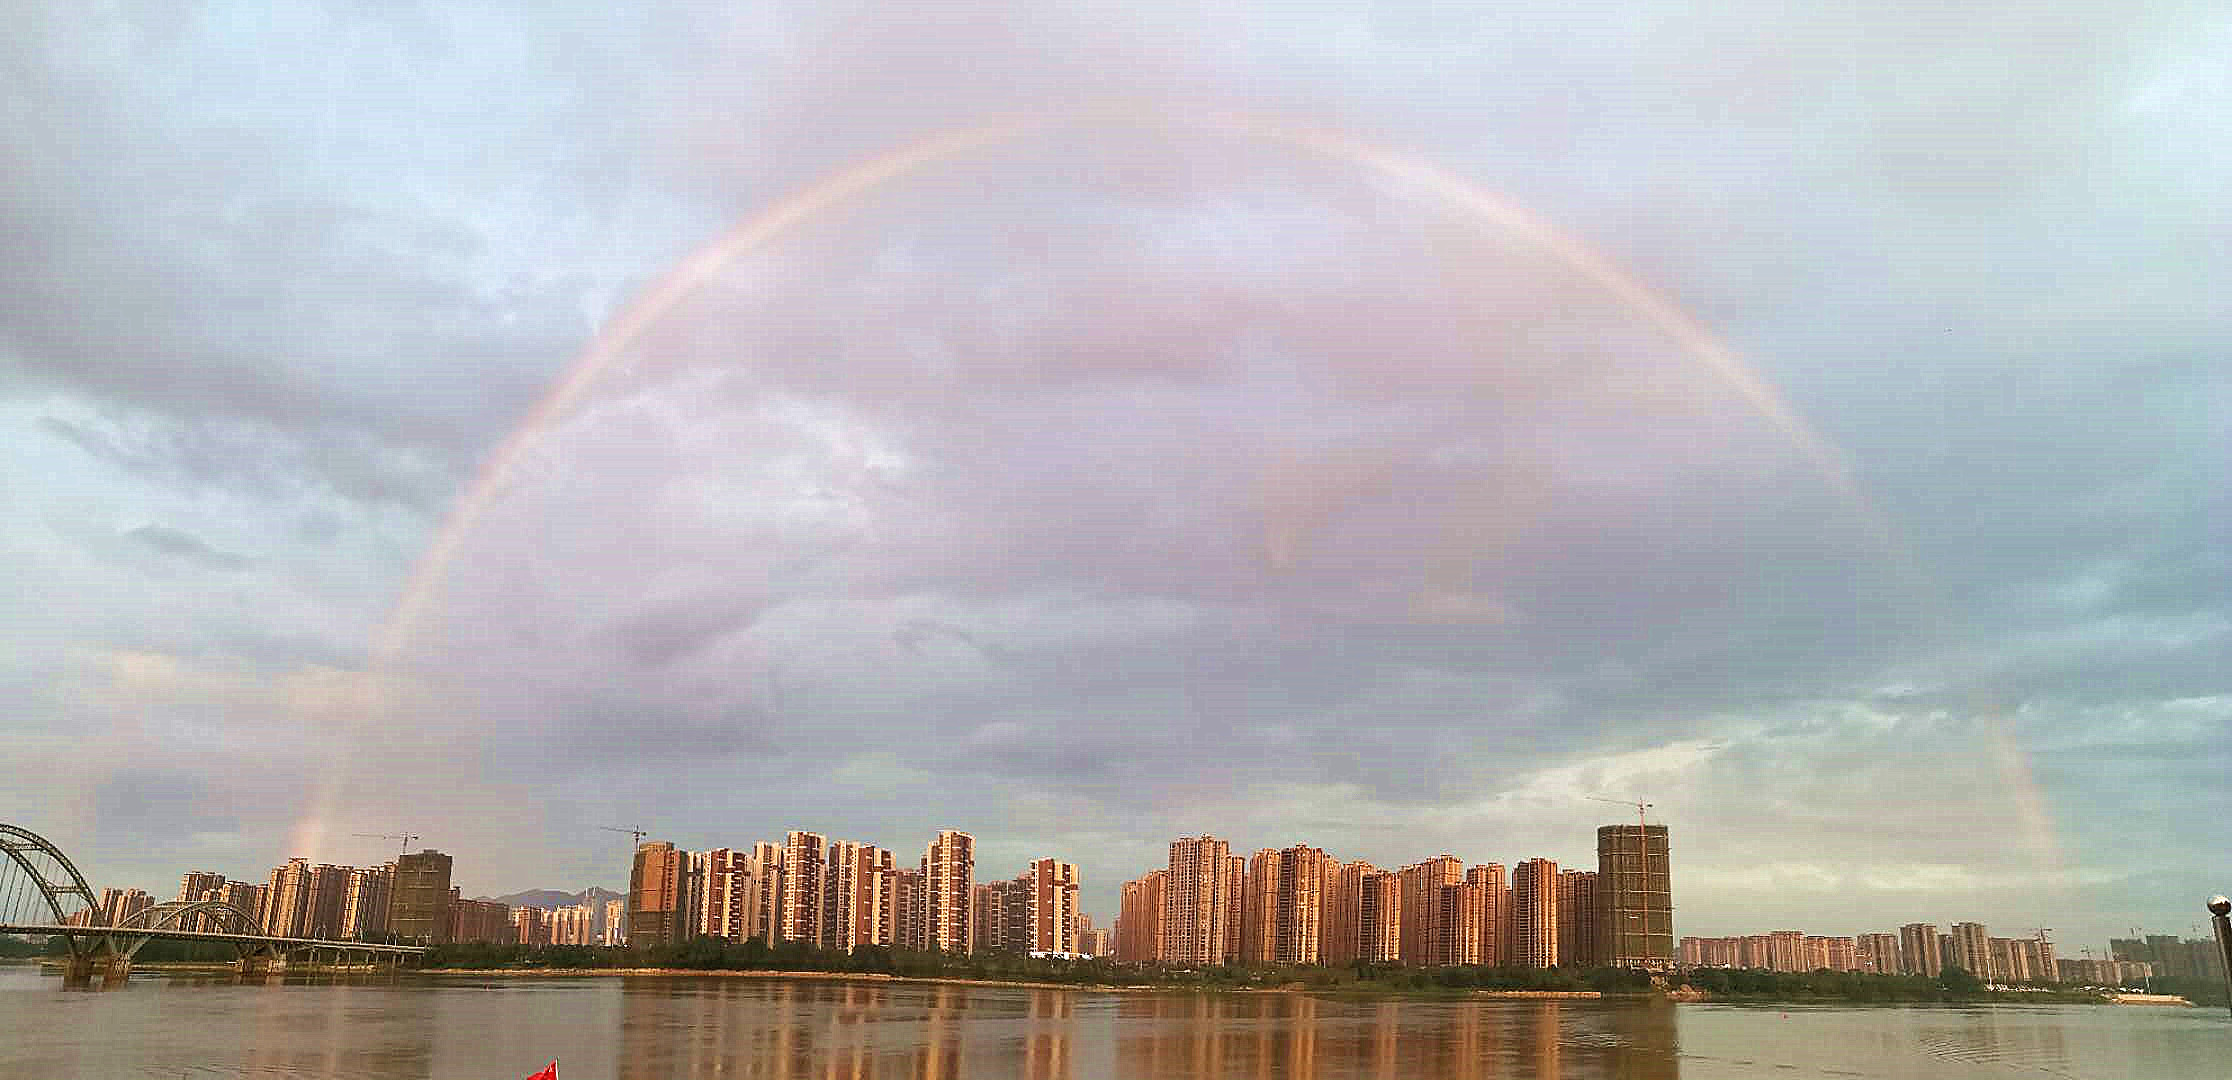 6月25傍晚时分,一场雨过后,江西吉安城区上空突然出现一道壮丽大彩虹